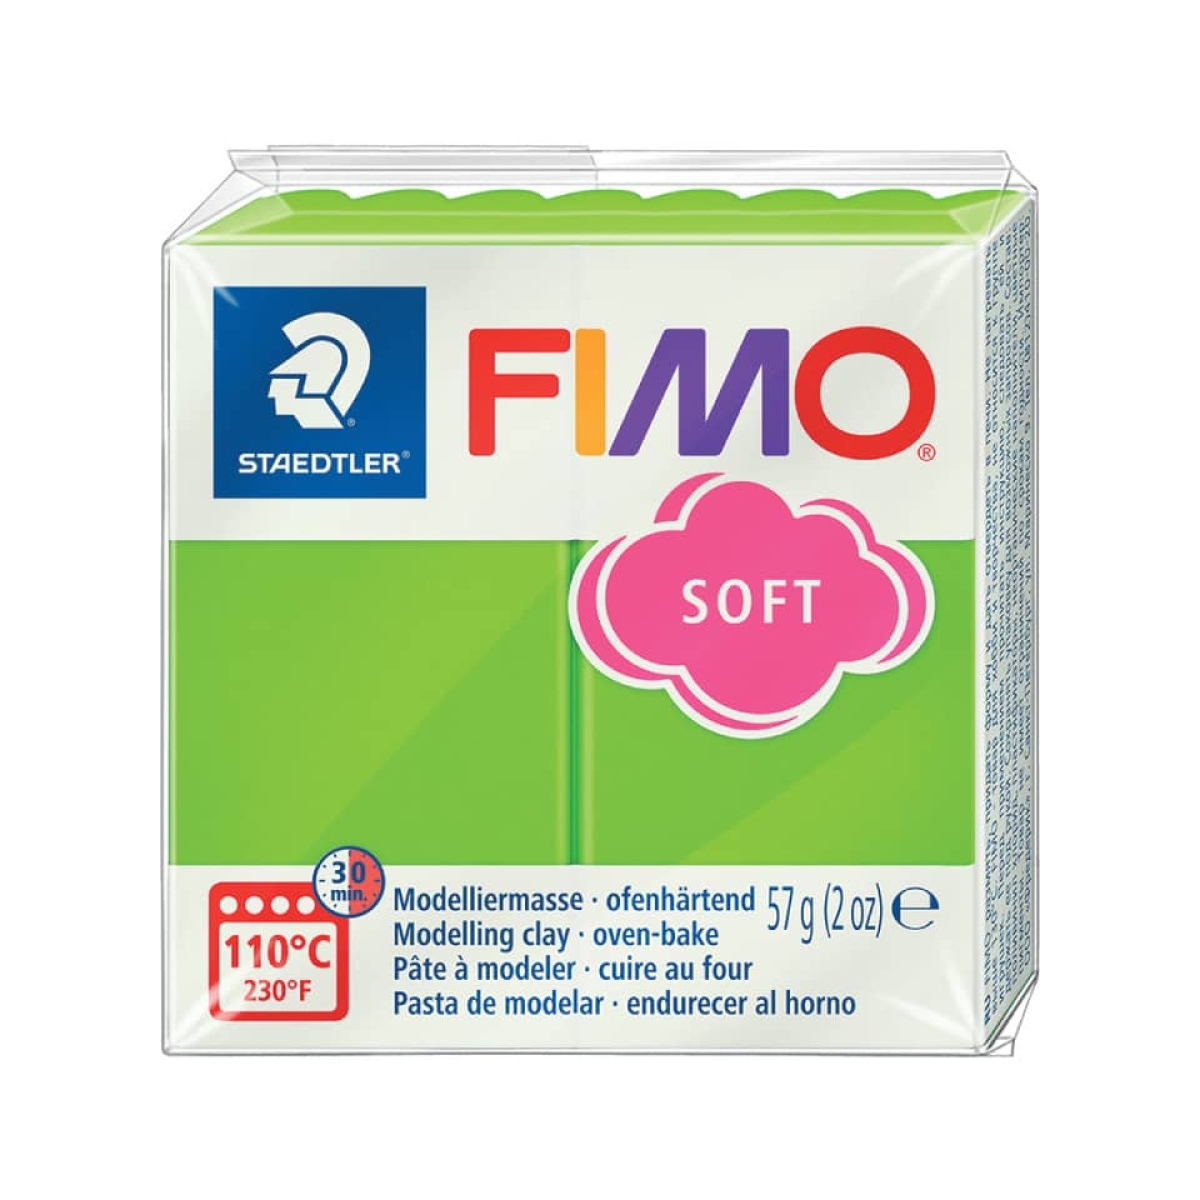 STAEDTLERModelliermasse FIMO® soft, 57 g, apfelgrün 8020-50-Preis für 0.0570 kgArtikel-Nr: 4006608809652